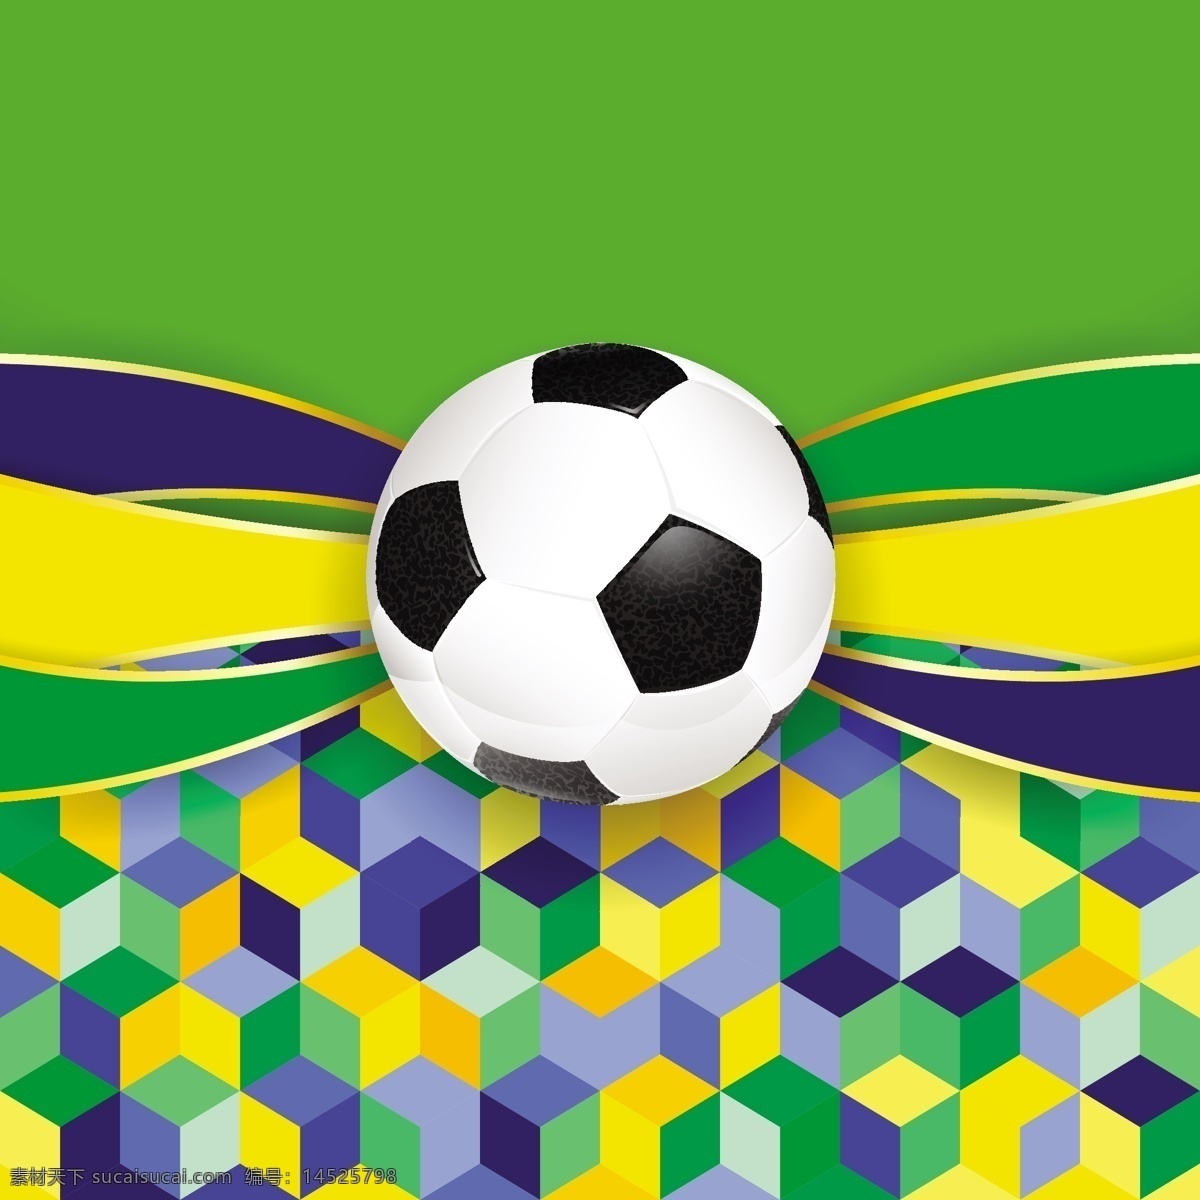 足球 几何图形 背景 模板下载 巴西 世界杯 海报 体育运动 生活百科 矢量素材 绿色